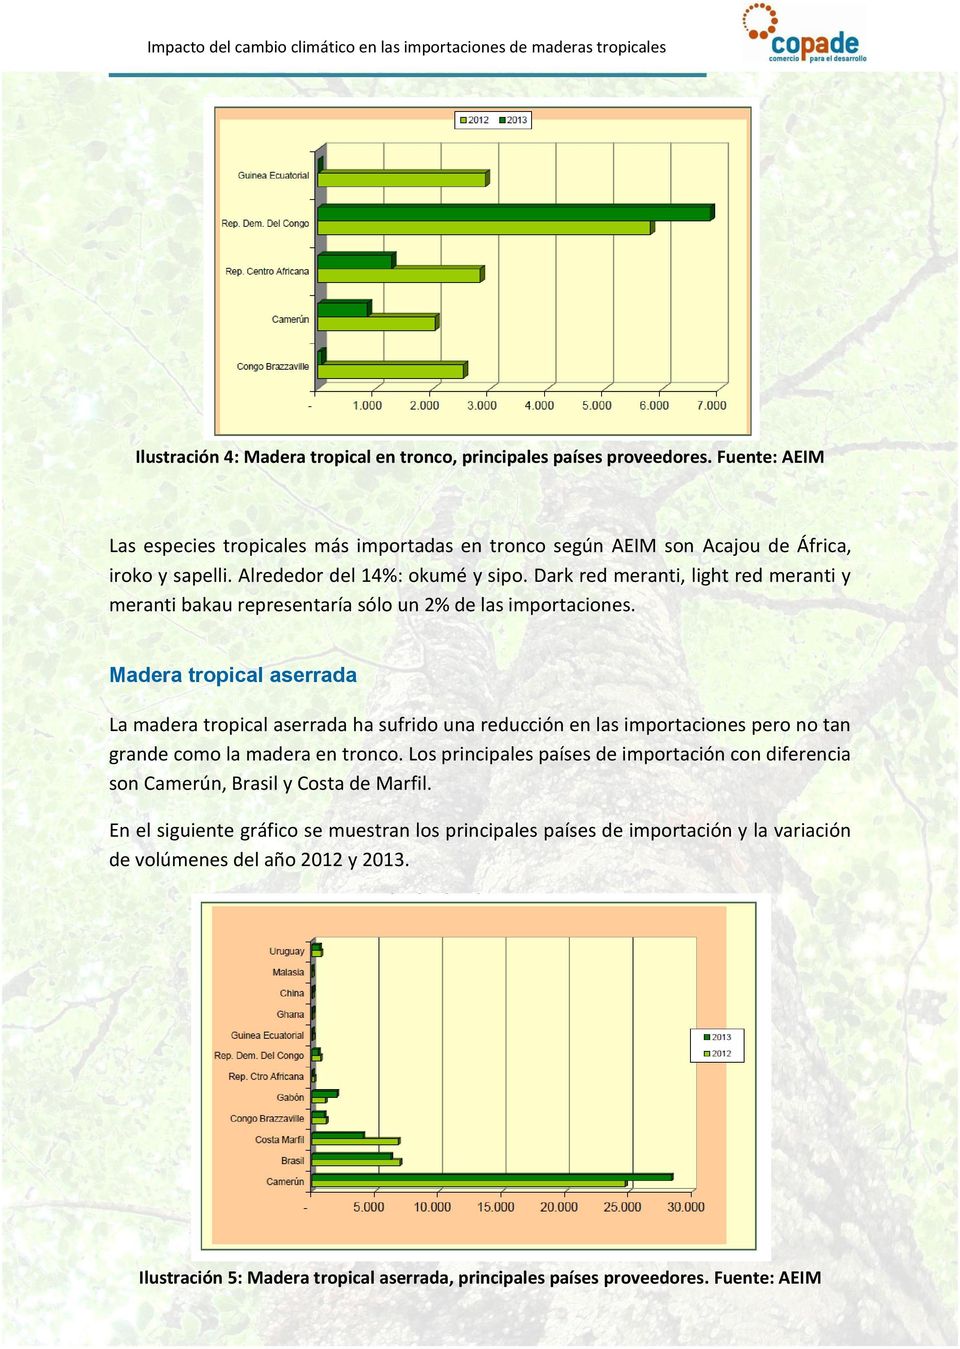 Madera tropical aserrada La madera tropical aserrada ha sufrido una reducción en las importaciones pero no tan grande como la madera en tronco.